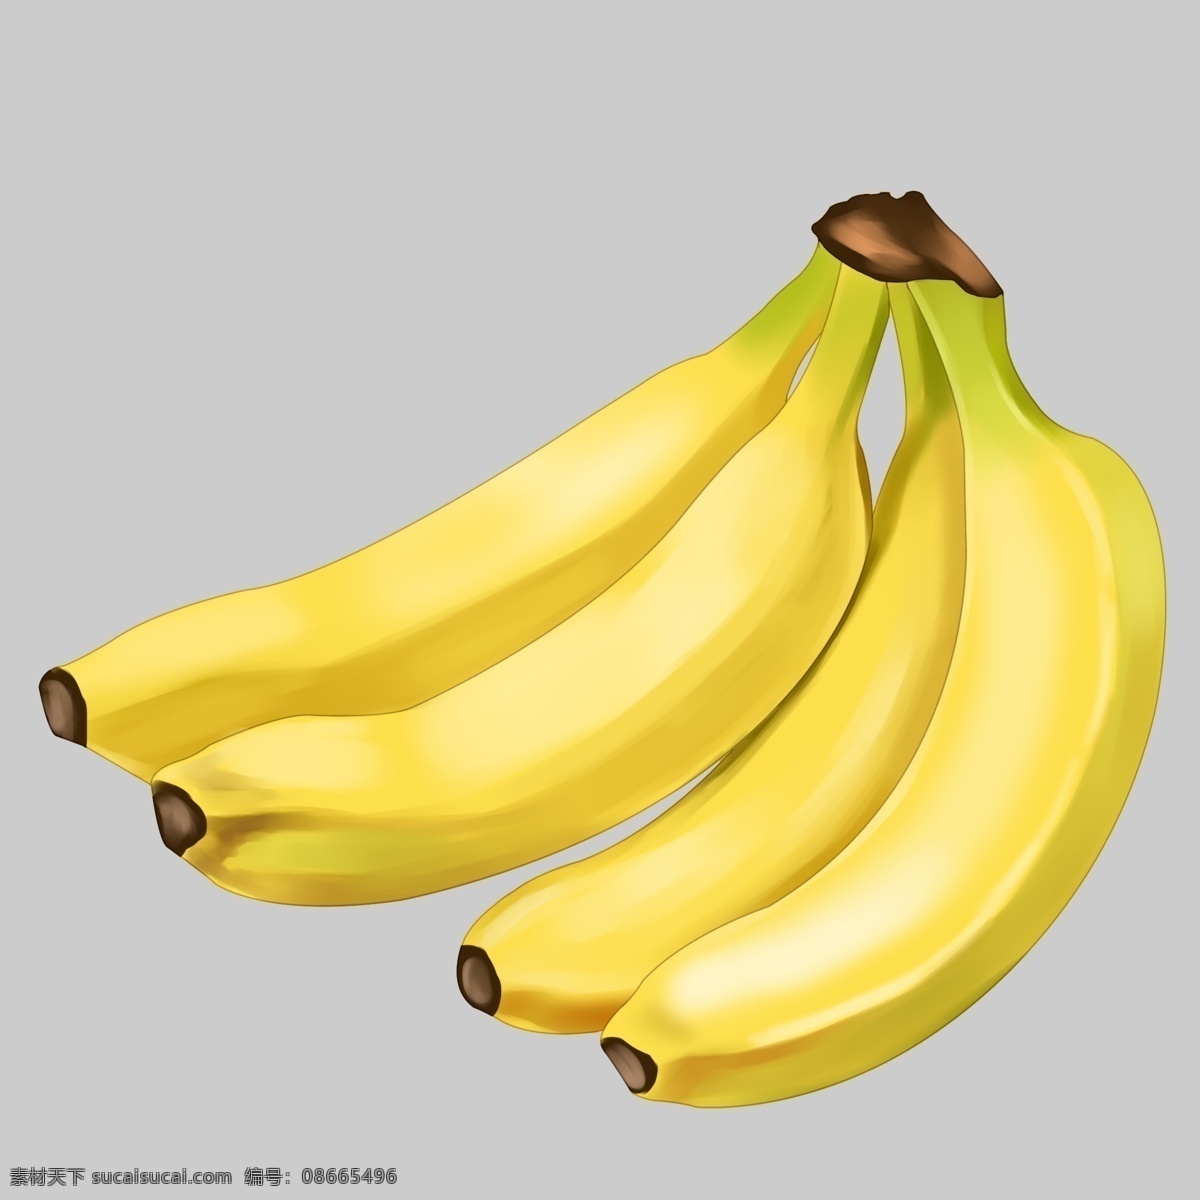 手绘香蕉 香蕉 简笔 手绘 夏季 手绘卡通素材 水彩 健康 水果 美味 彩绘 卡通香蕉 卡通设计